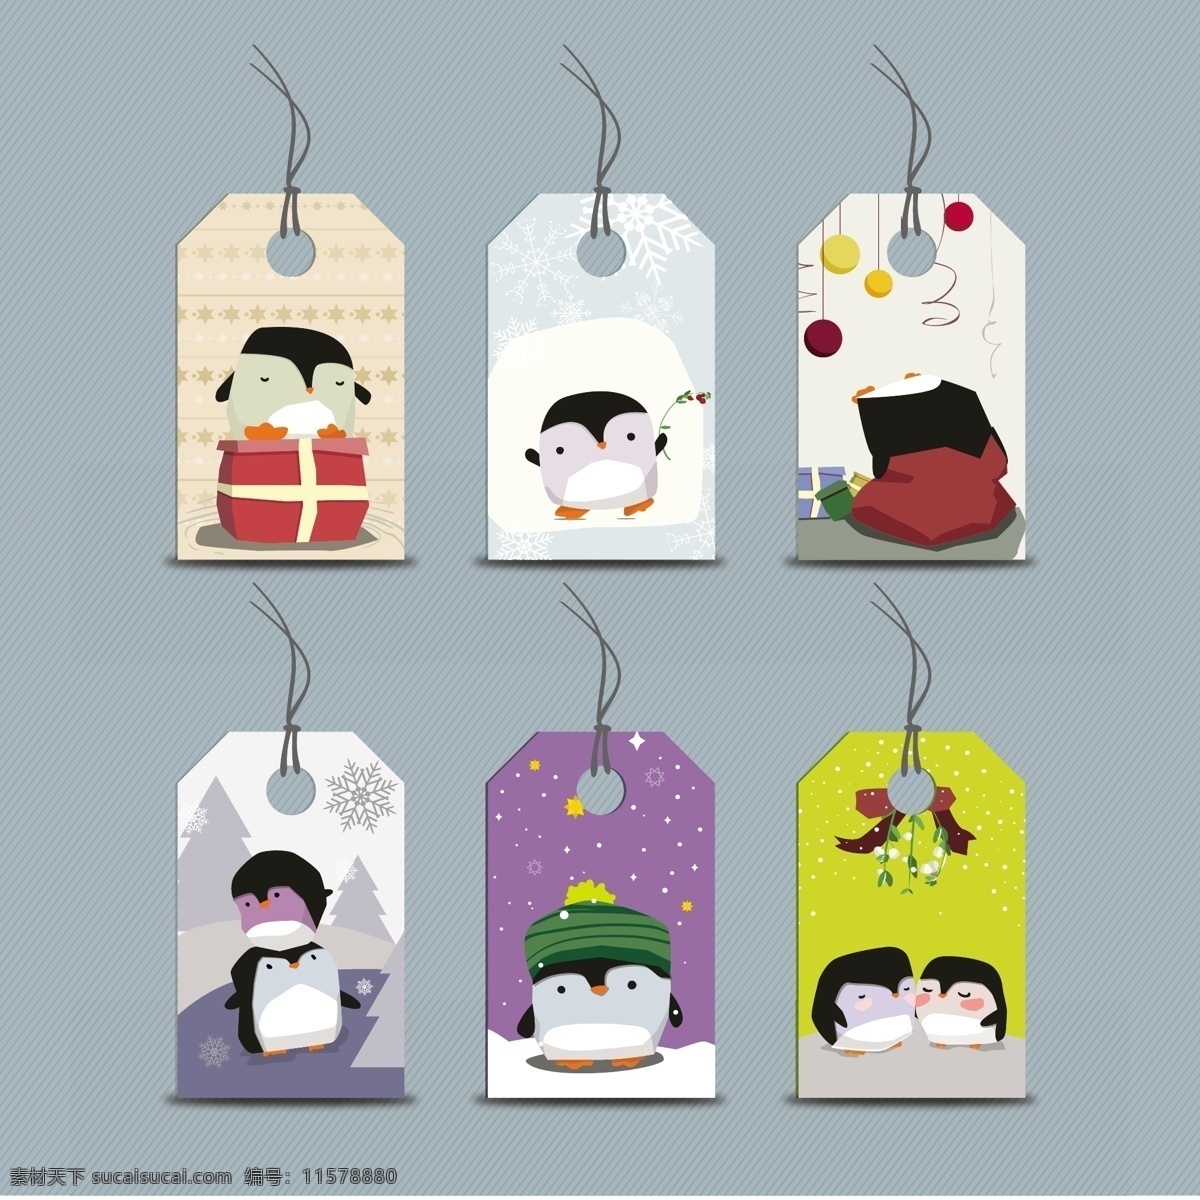 卡通 企鹅 标签 eps格式 插图 吊牌 冬天 搞笑 可爱 礼品 圣诞节 矢量 雪 海报 其他海报设计